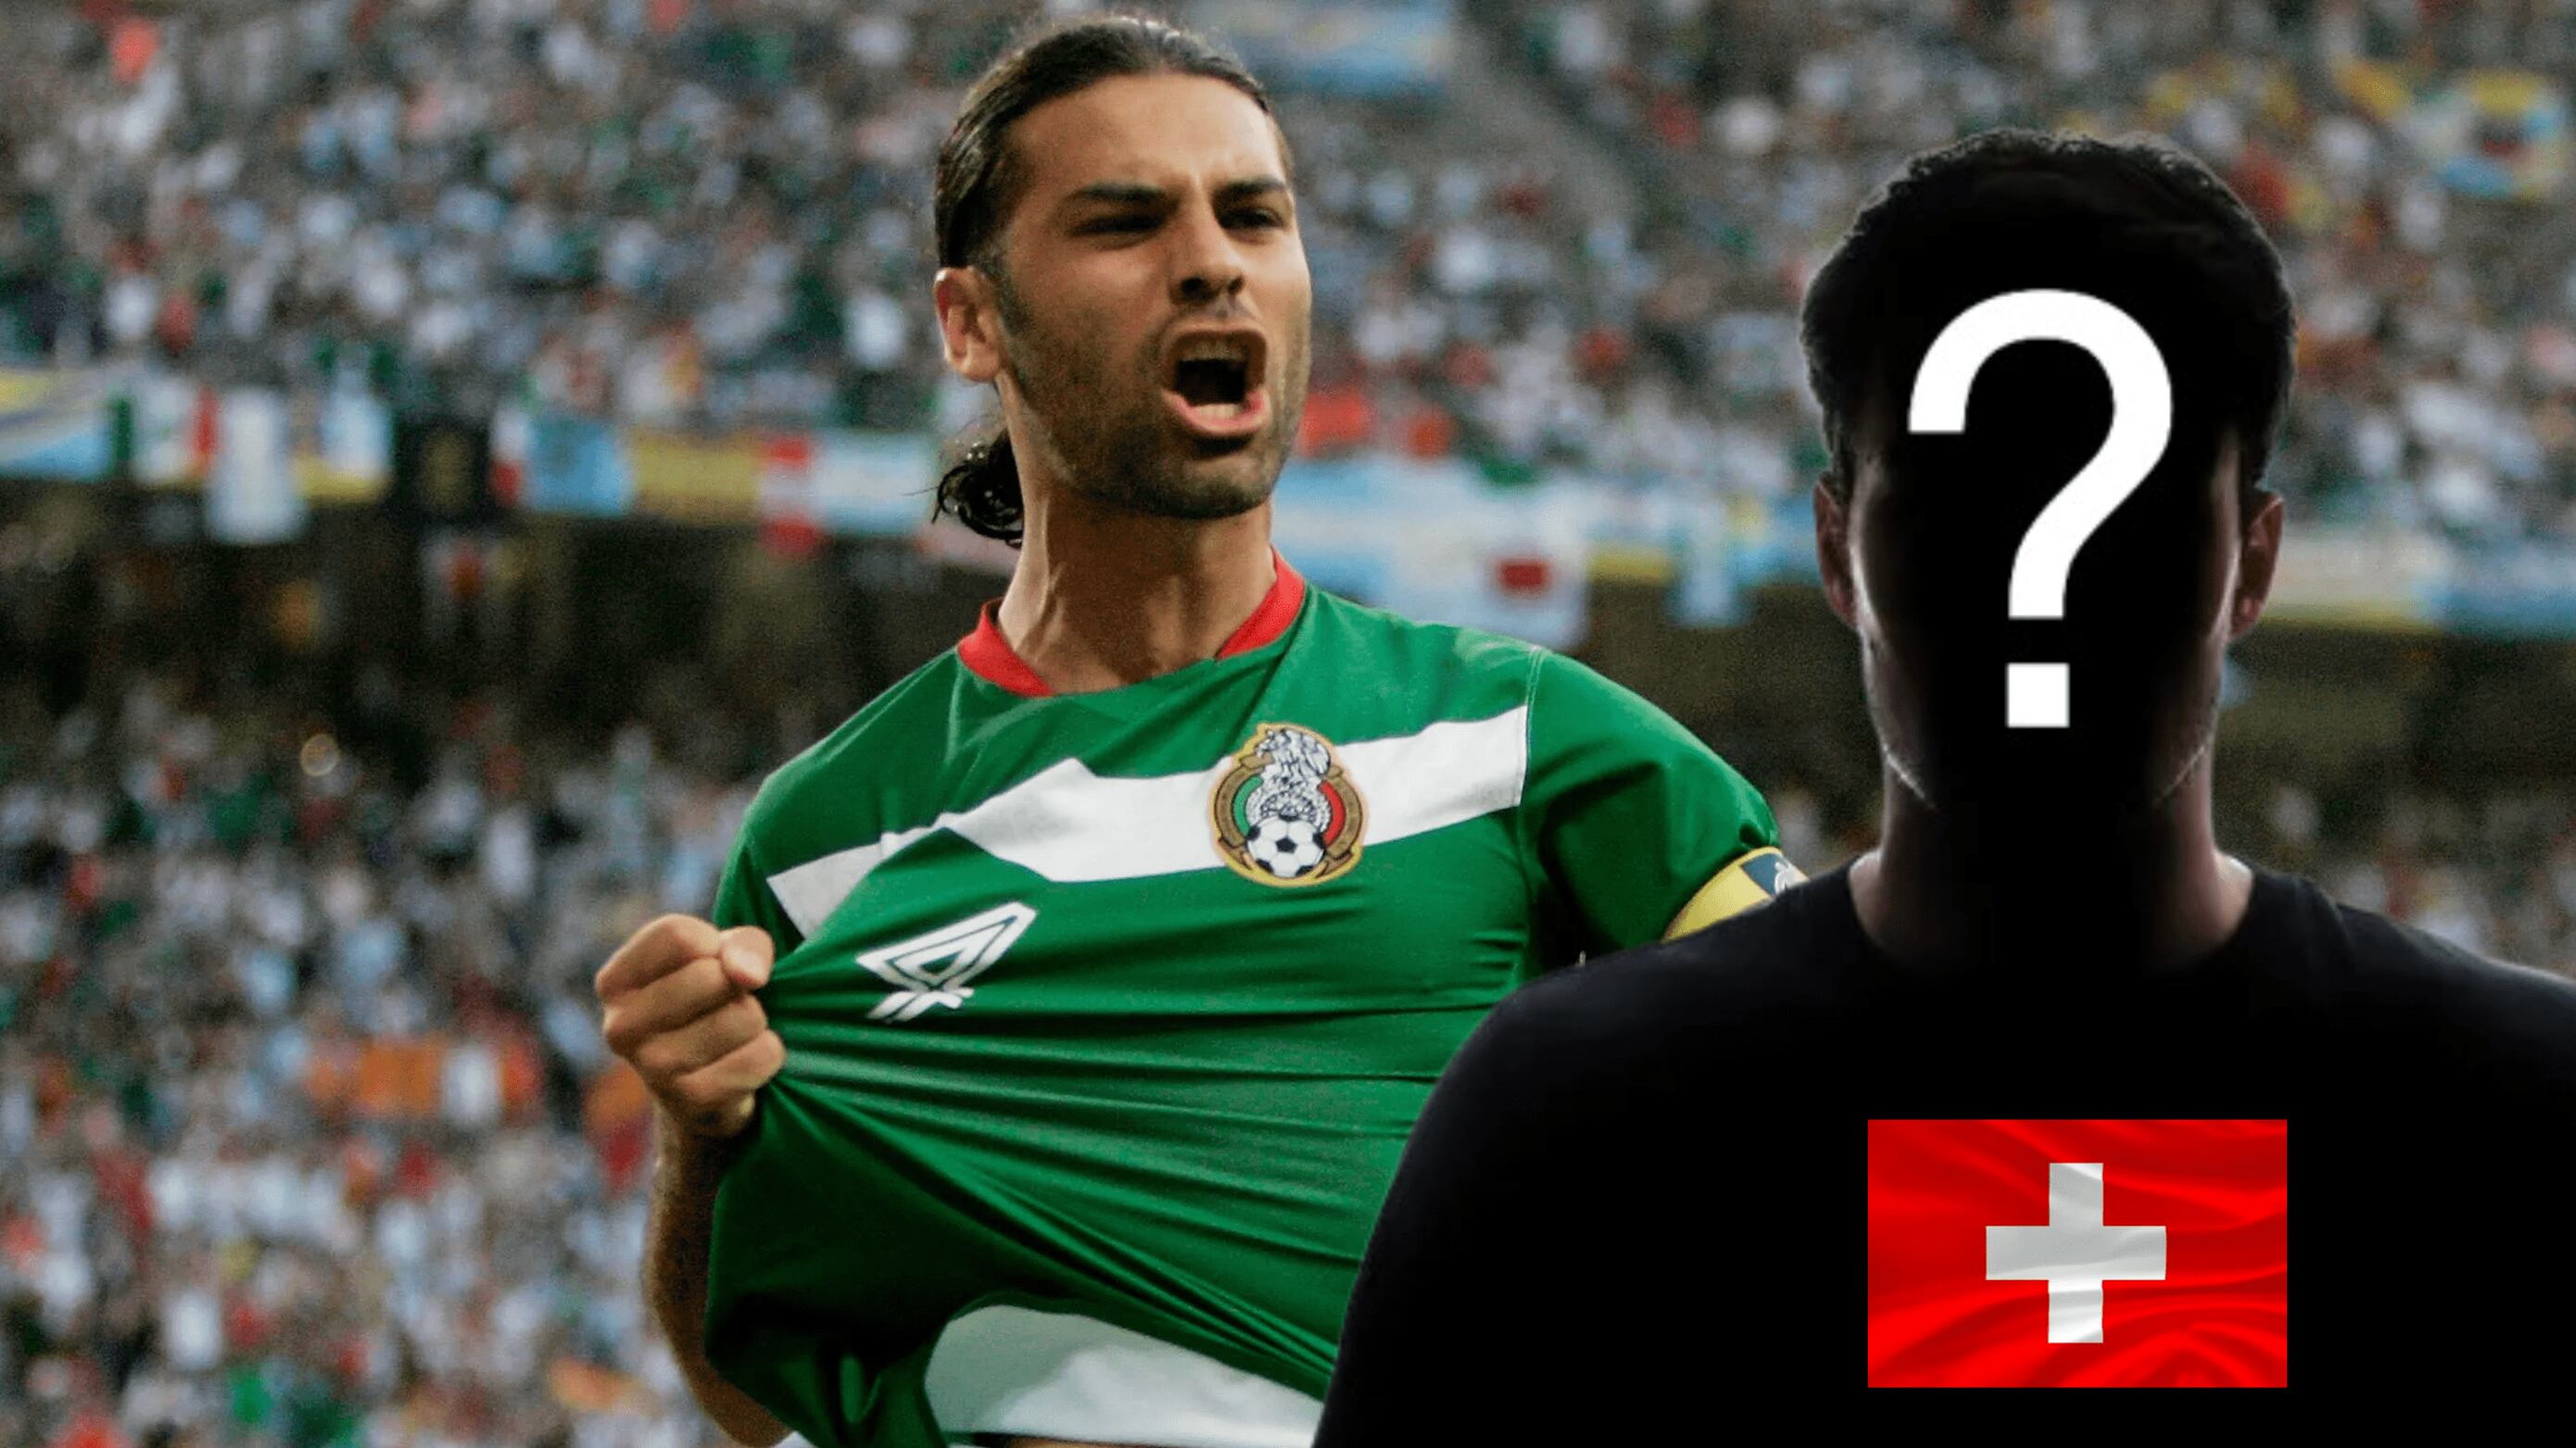 Le dicen el nuevo Rafa Márquez, es suizo y le da el sí a México para ir al Mundial